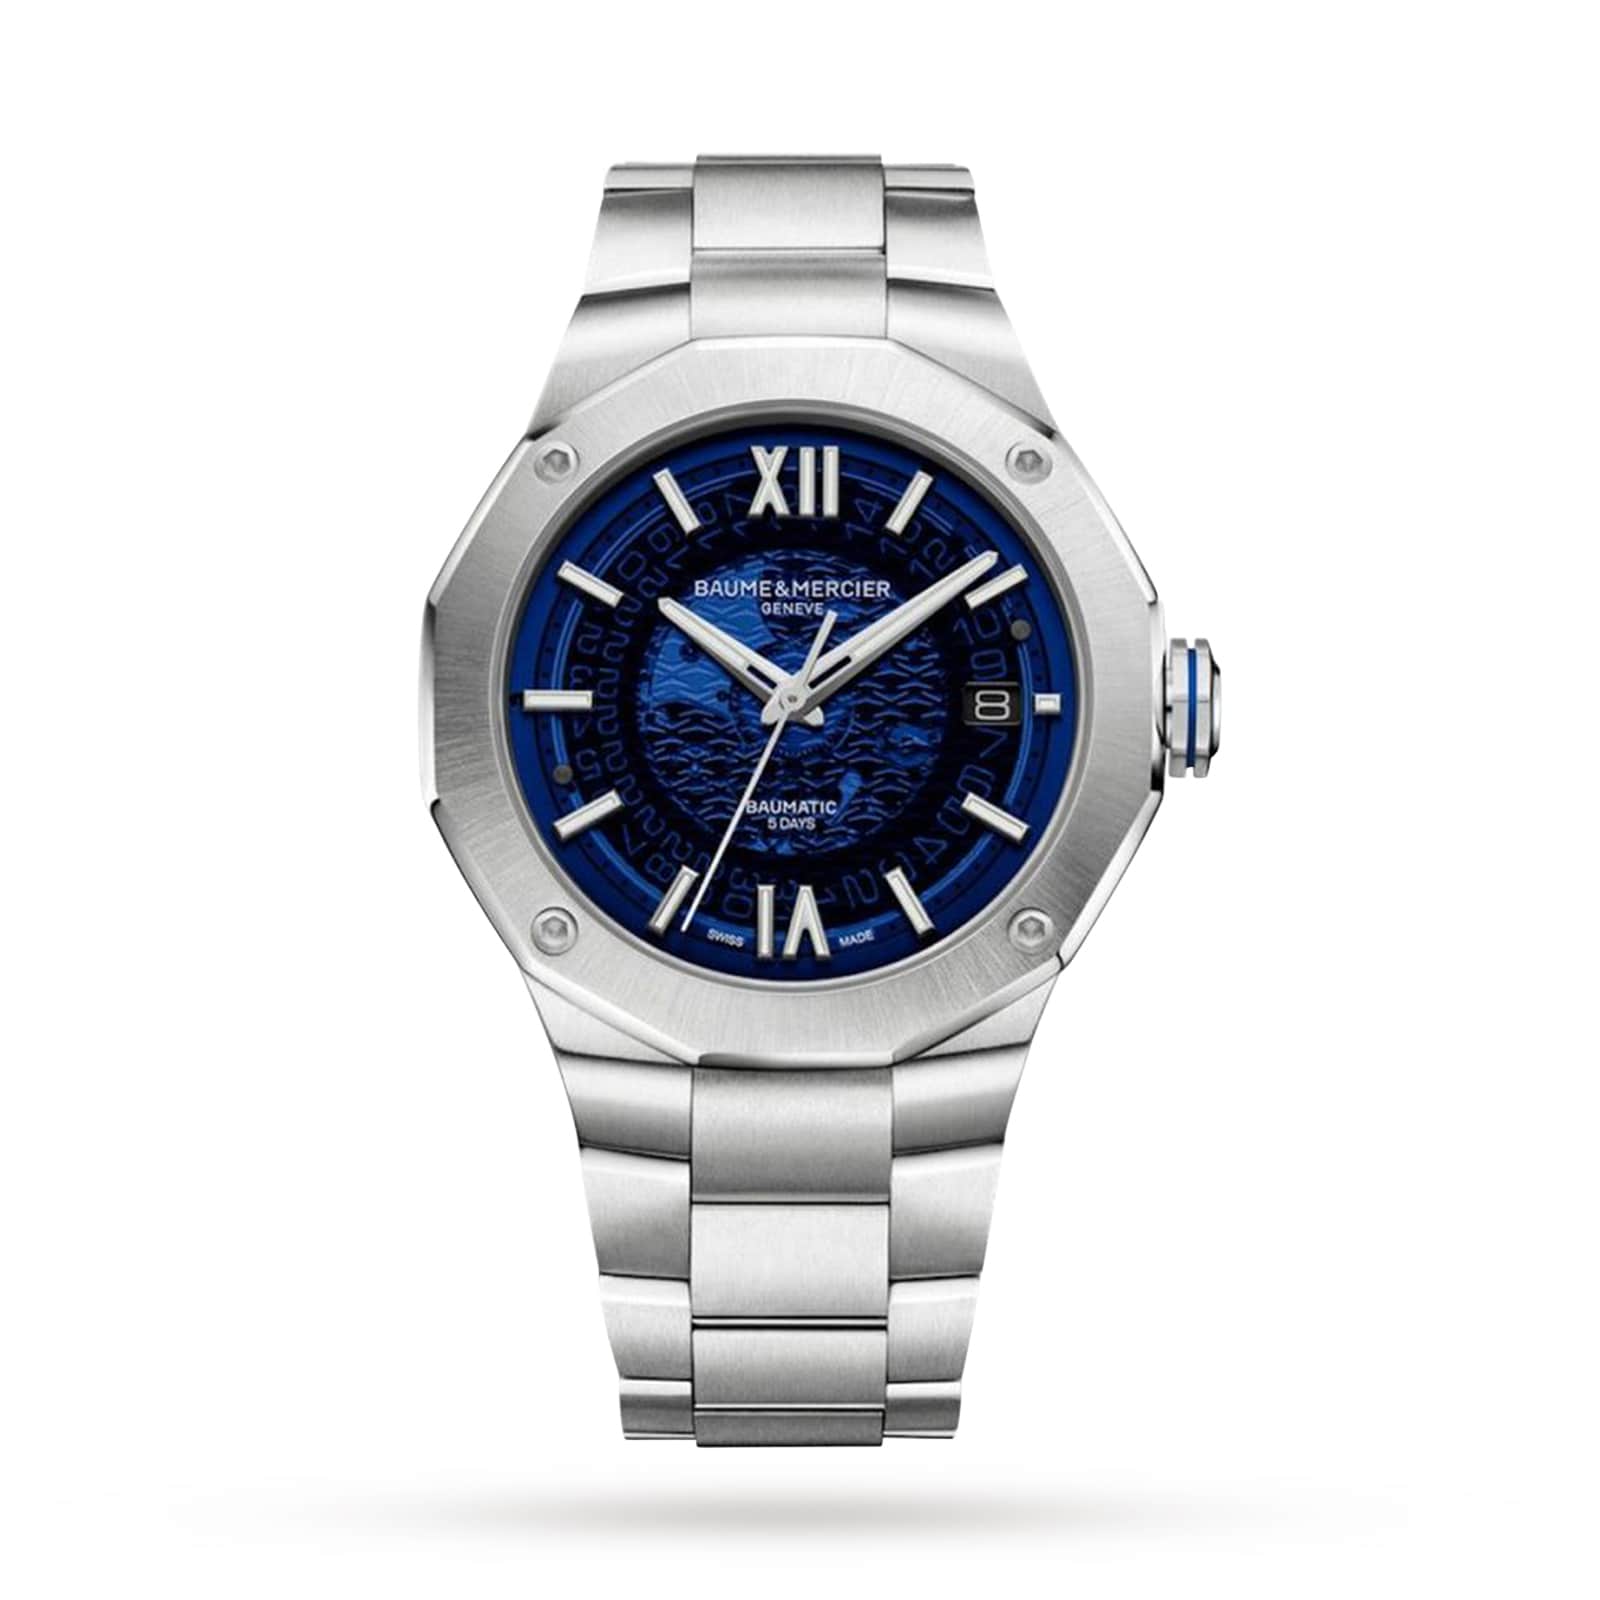 Baume et Mercier Clifton Baumatic Automatic Red Dial Men's Watch M0A10591 |  Watches for men, Baume mercier, Baume et mercier